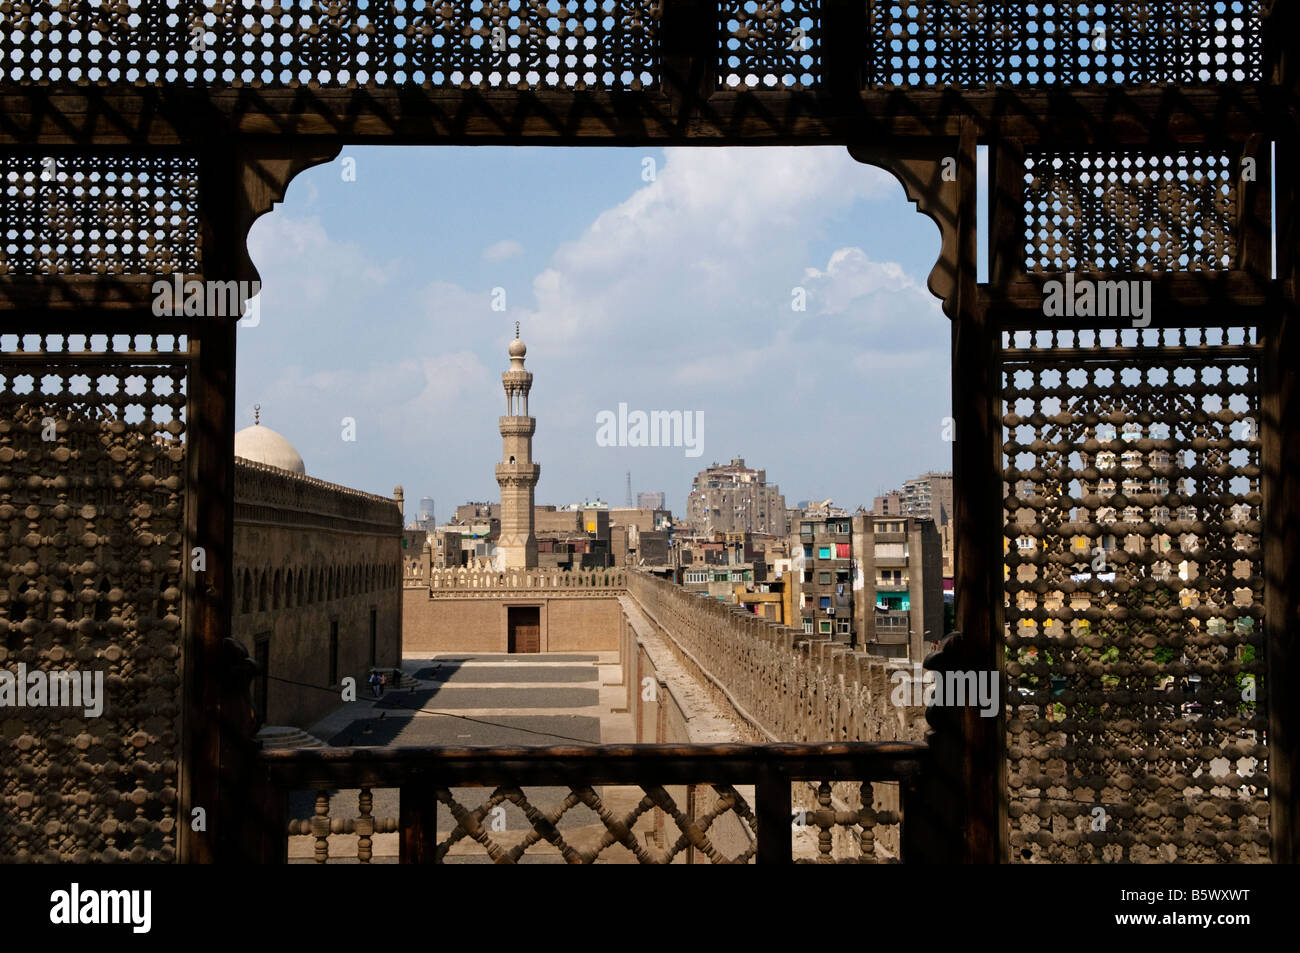 Ansicht der Ibn Tulun Moschee durch Holz geschnitzt Gitterkonstruktion Mashrabiya Fenster an der Ägyptischen Dachterrasse des Gayer-Anderson Museum in Kairo Ägypten Stockfoto